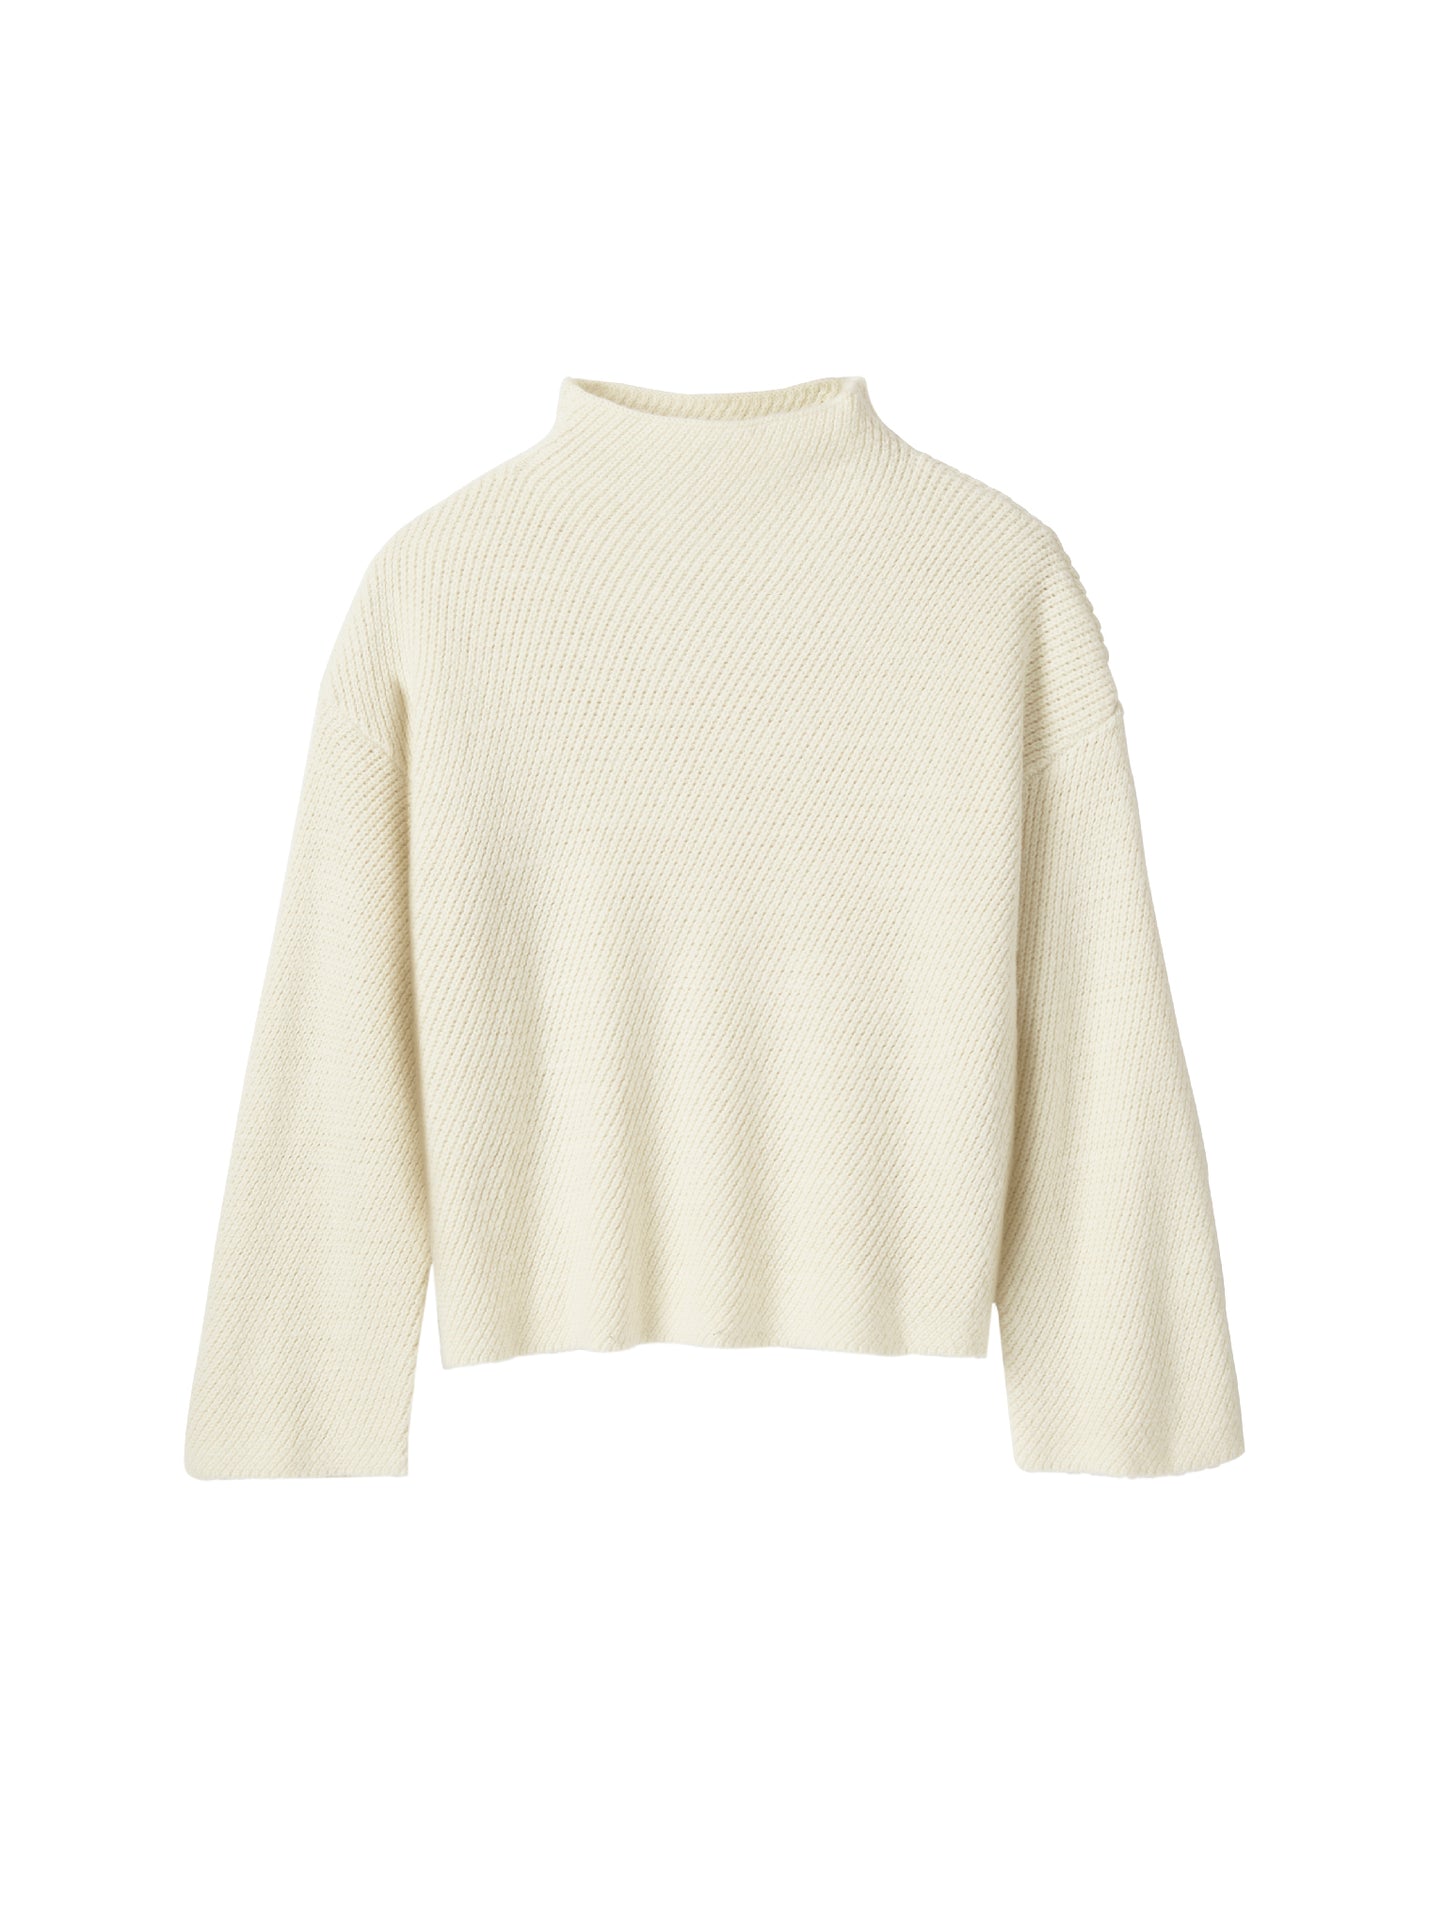 Earnest Sweater